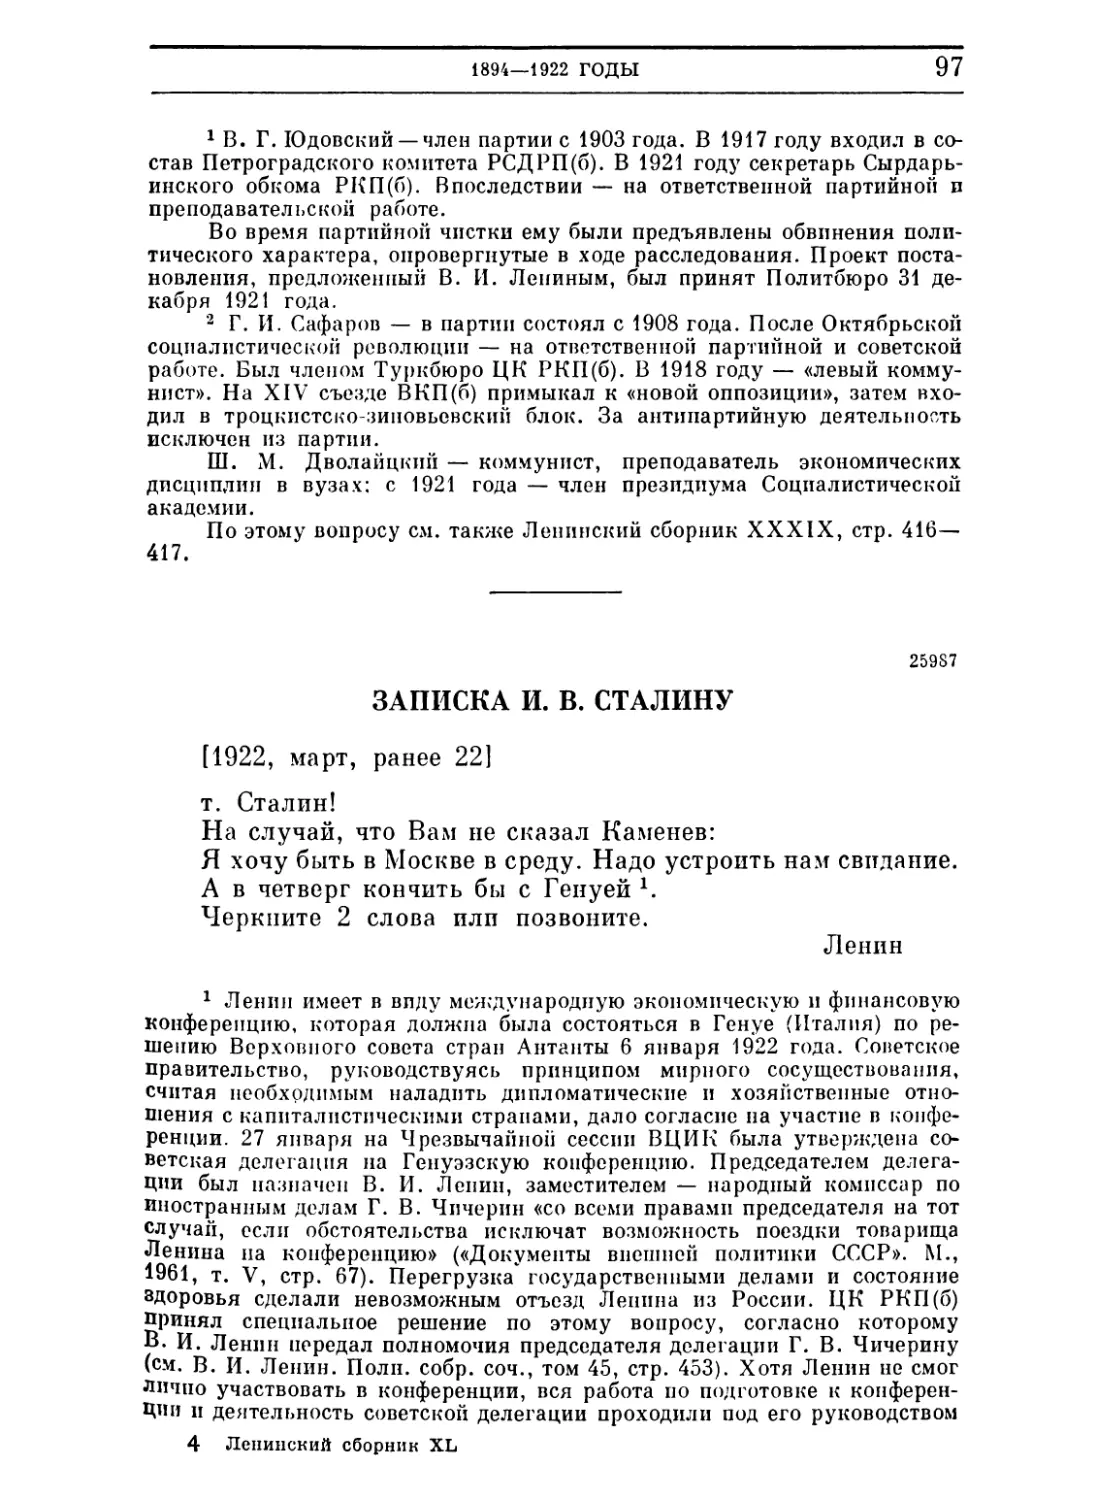 Записка И. В. Сталину. Ранее 22 марта 1922